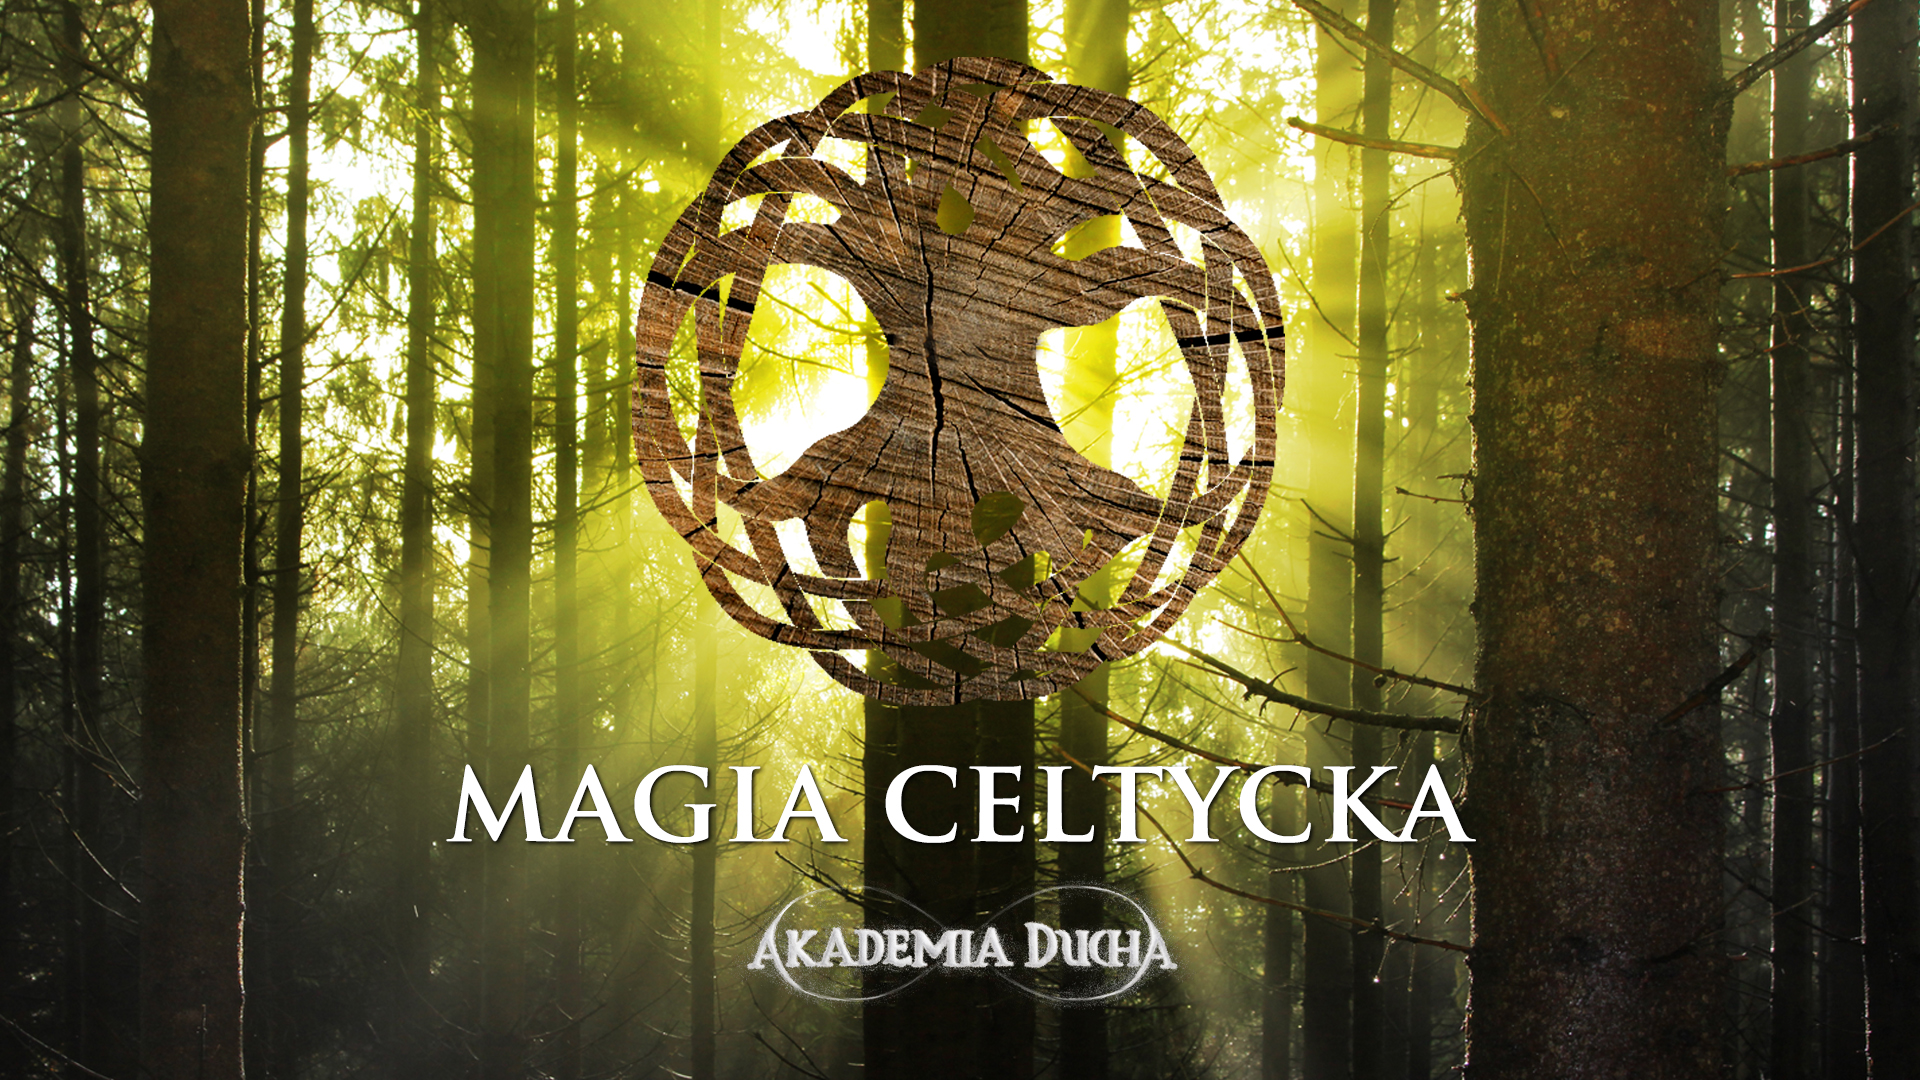 Magia Celtycka